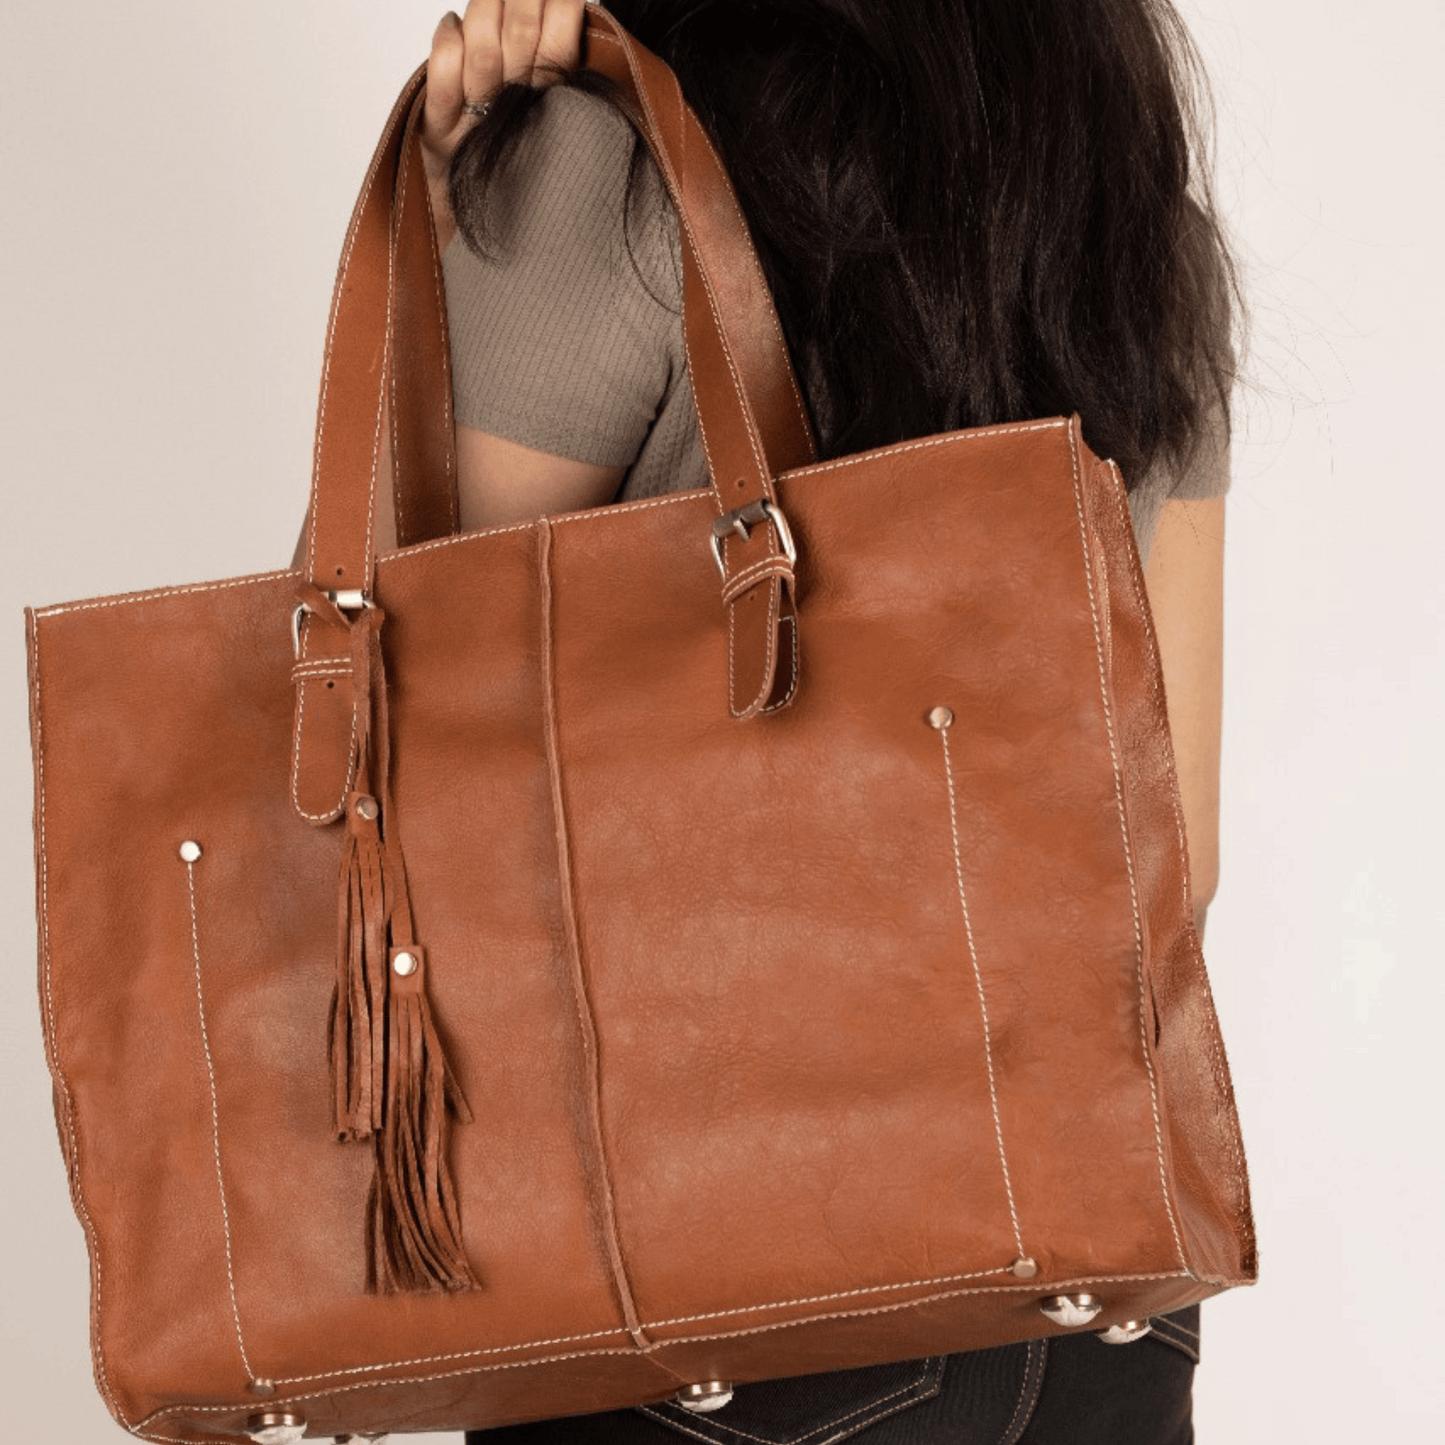 Shopper Tote Bag Big Size Tan Touch